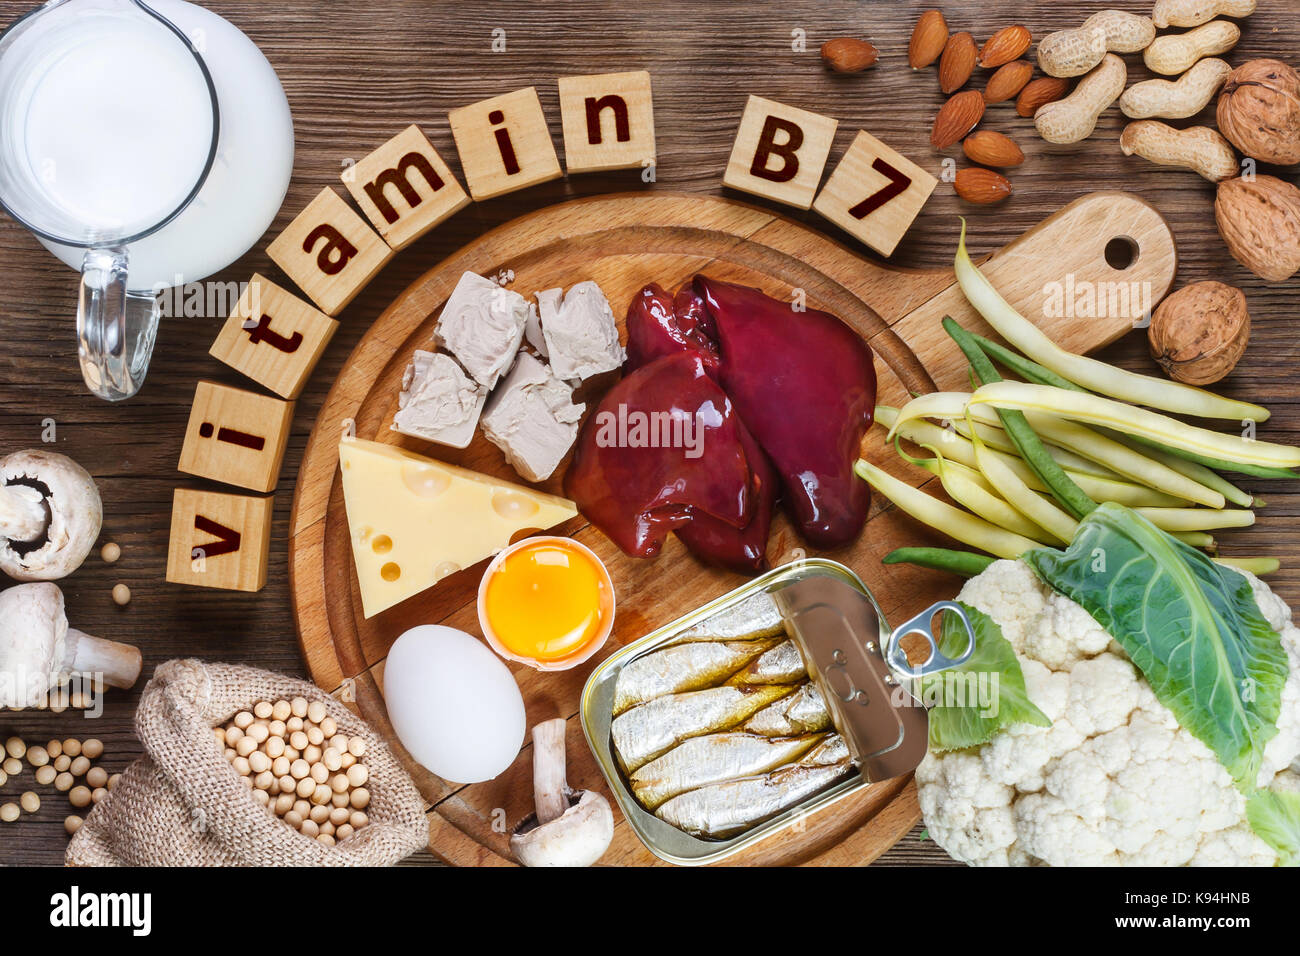 Lebensmittel, die reich an Vitamin B7 (Biotin). Lebensmittel wie Leber,  Eigelb, Hefe, Käse, Sardinen, Soja, Milch, Blumenkohl, grüne Bohnen, Pilze,  Erdnüsse, w Stockfotografie - Alamy